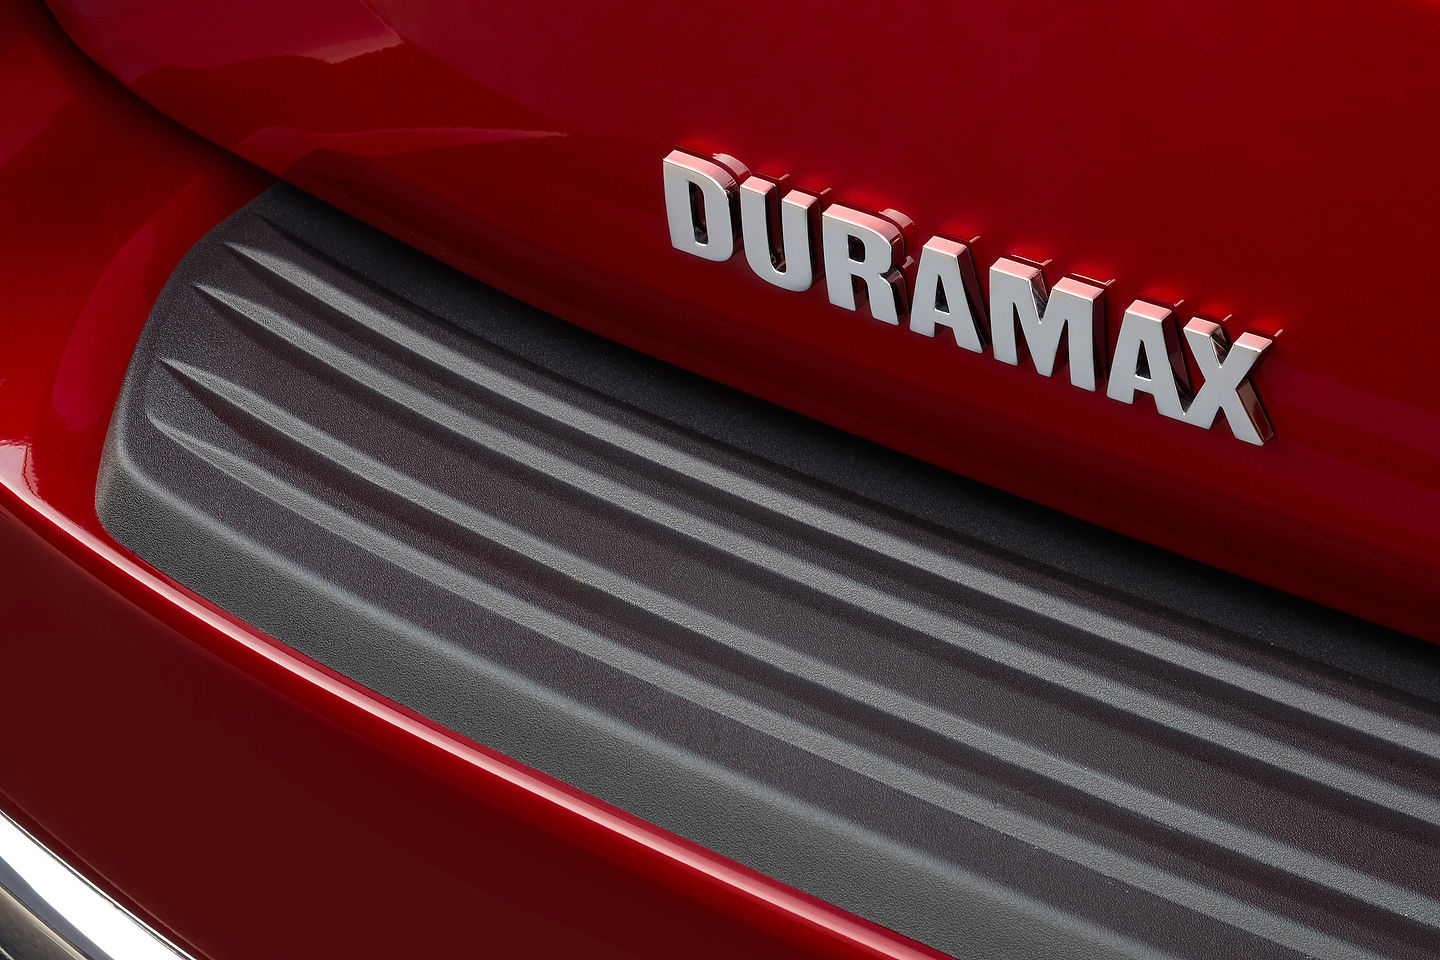 Le moteur Diesel Duramax de GM : un allié de taille